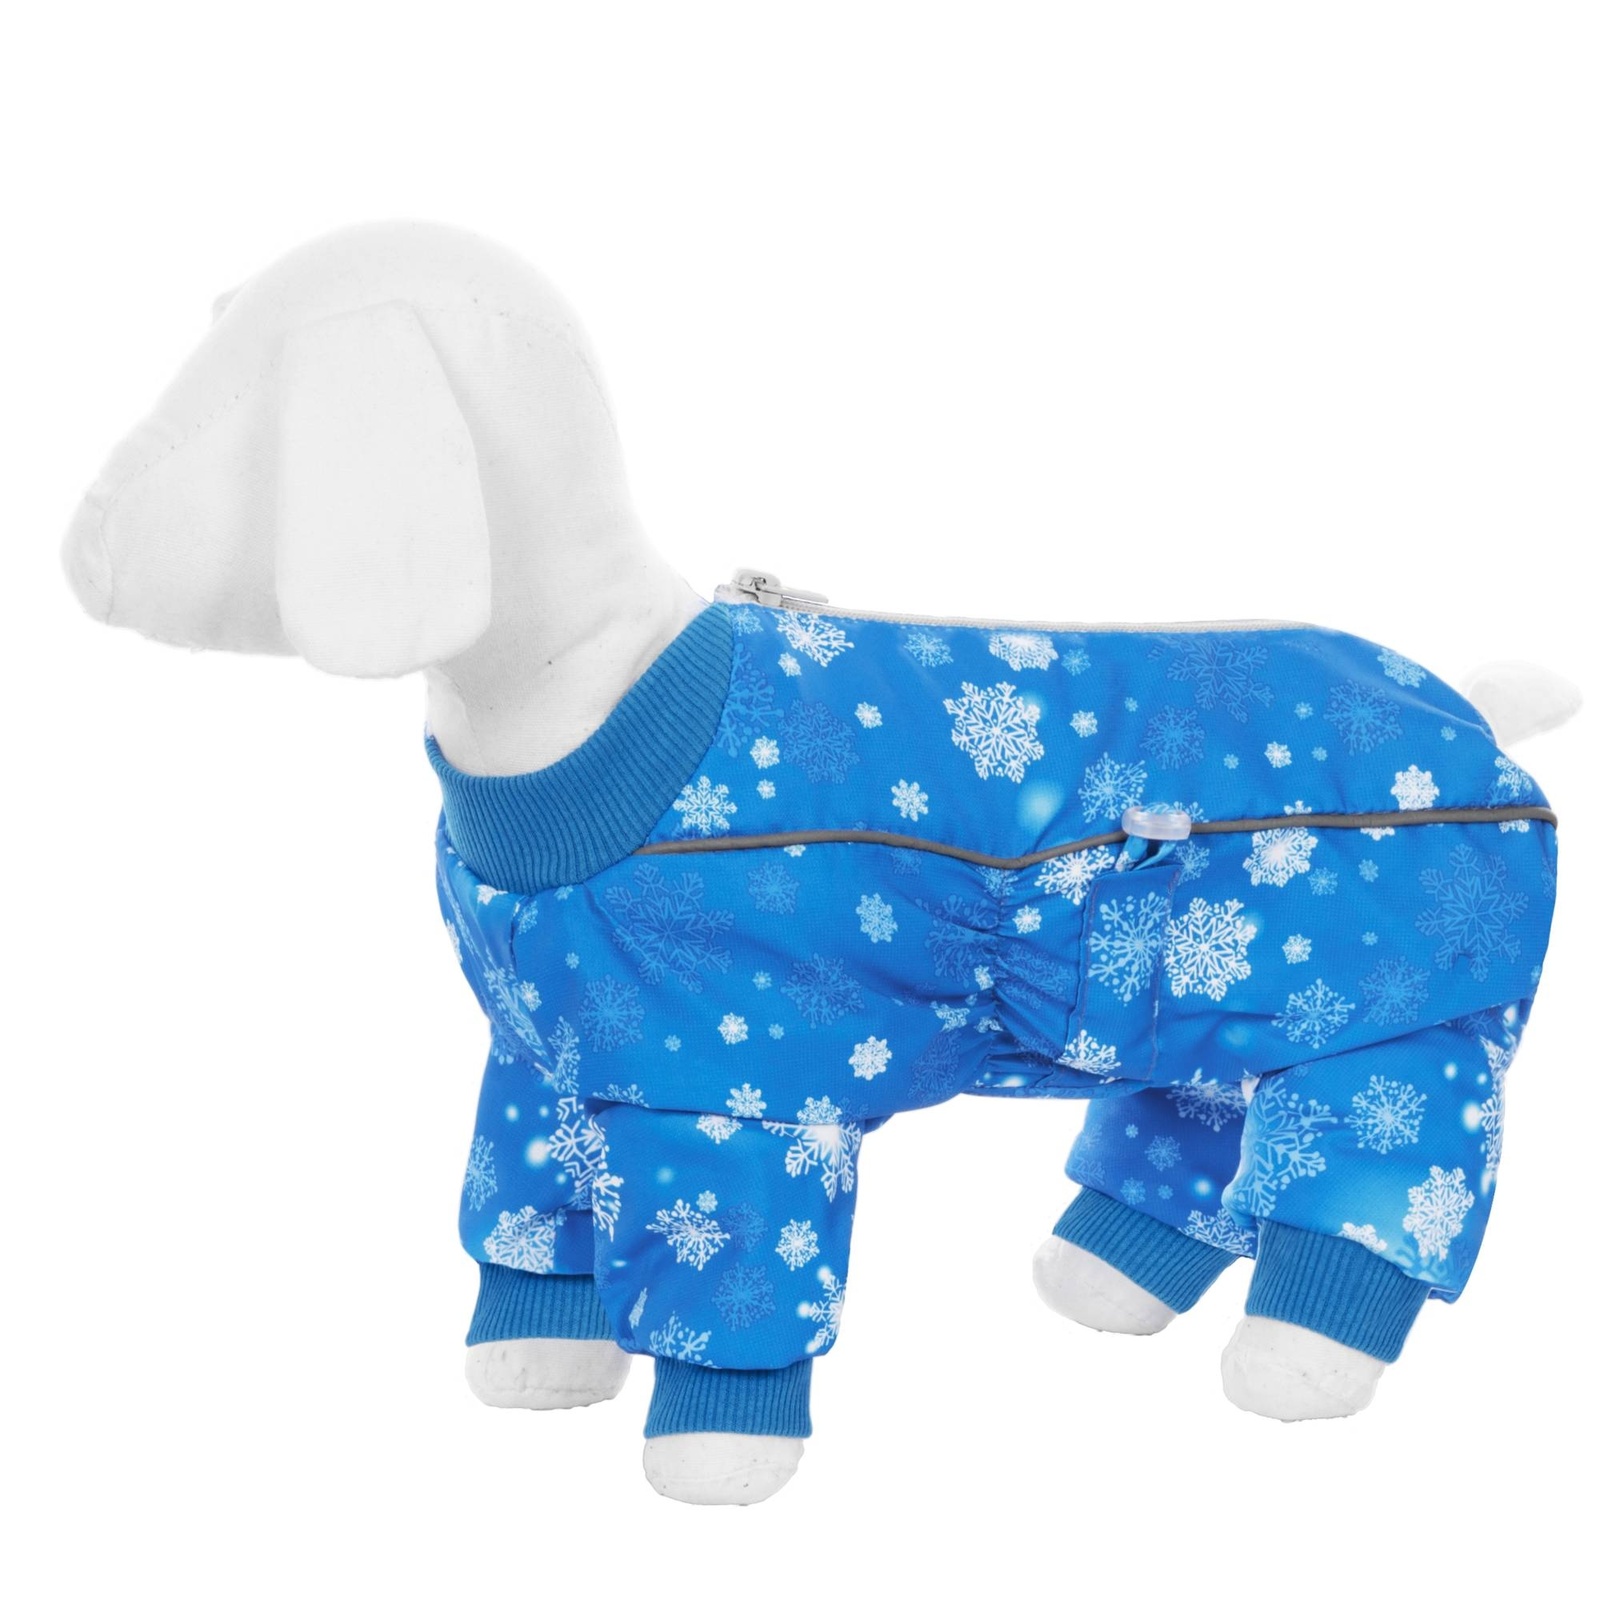 Yami-Yami одежда Yami-Yami одежда комбинезон для собак малых пород, на меху с рисунком снежинки (M) yami yami одежда yami yami одежда комбинезон для собак малых пород на меху с рисунком снежинки s